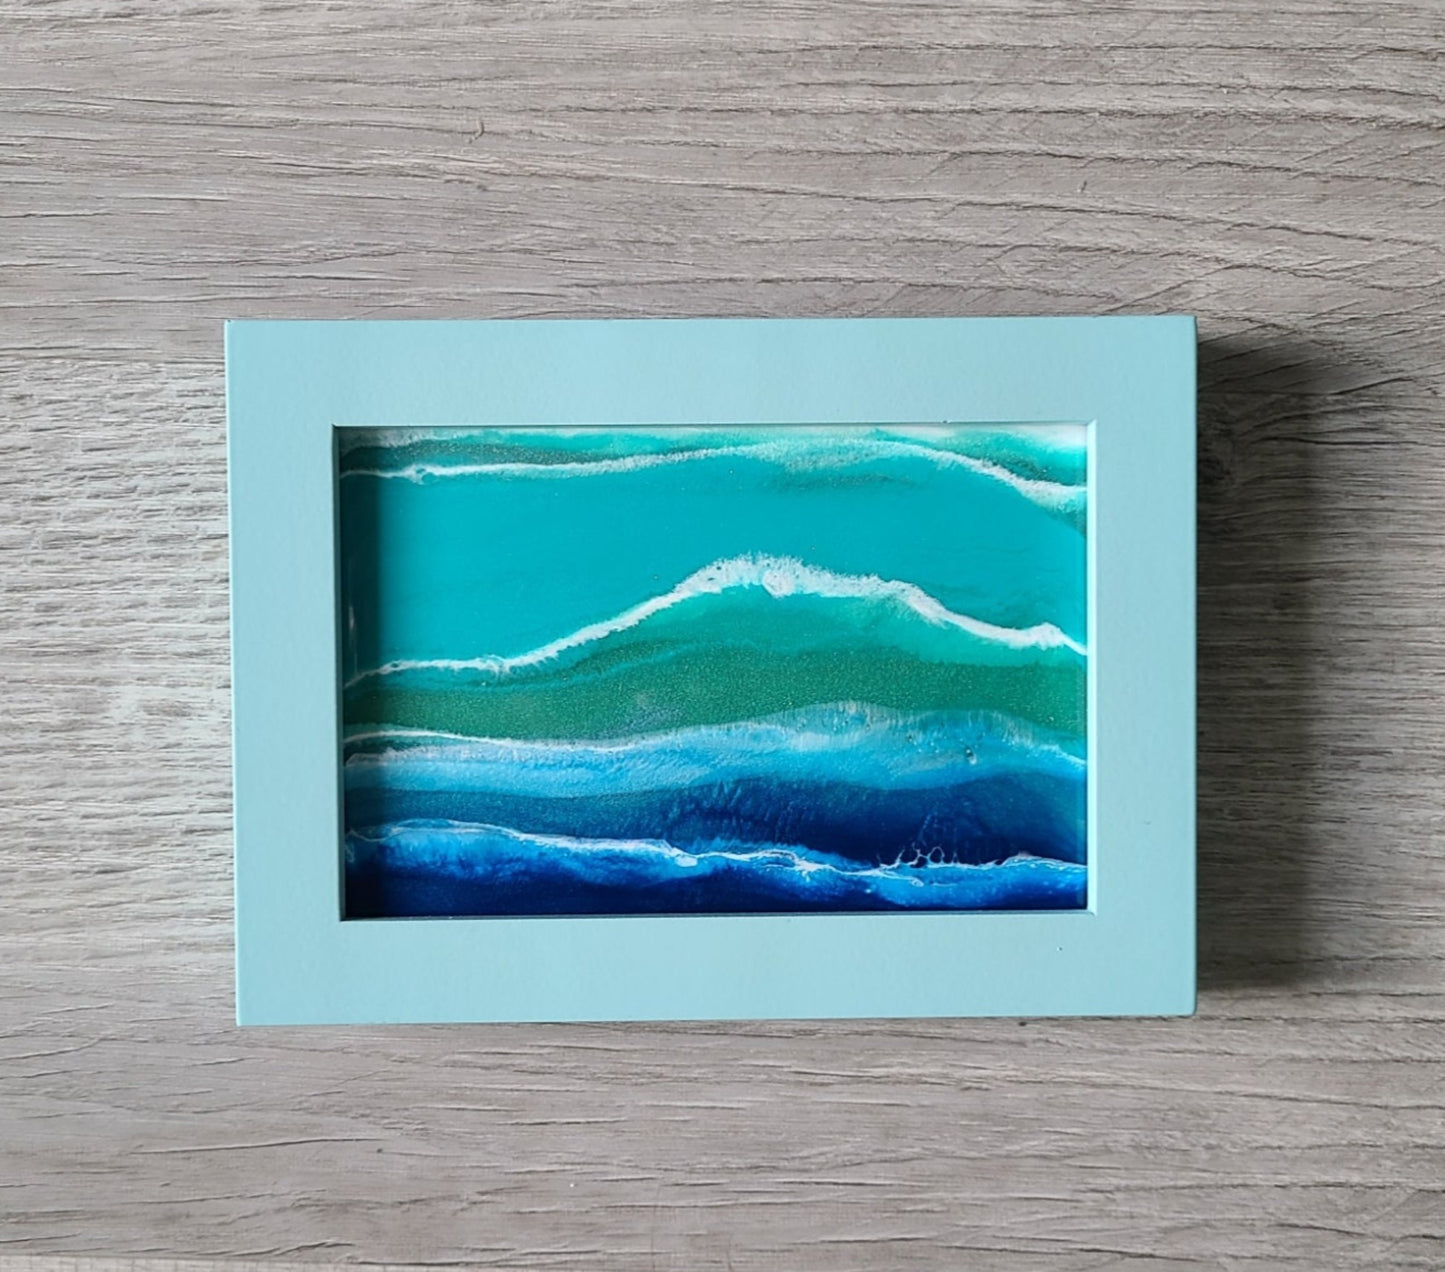 Ocean Scene on Glass in Wood Frame